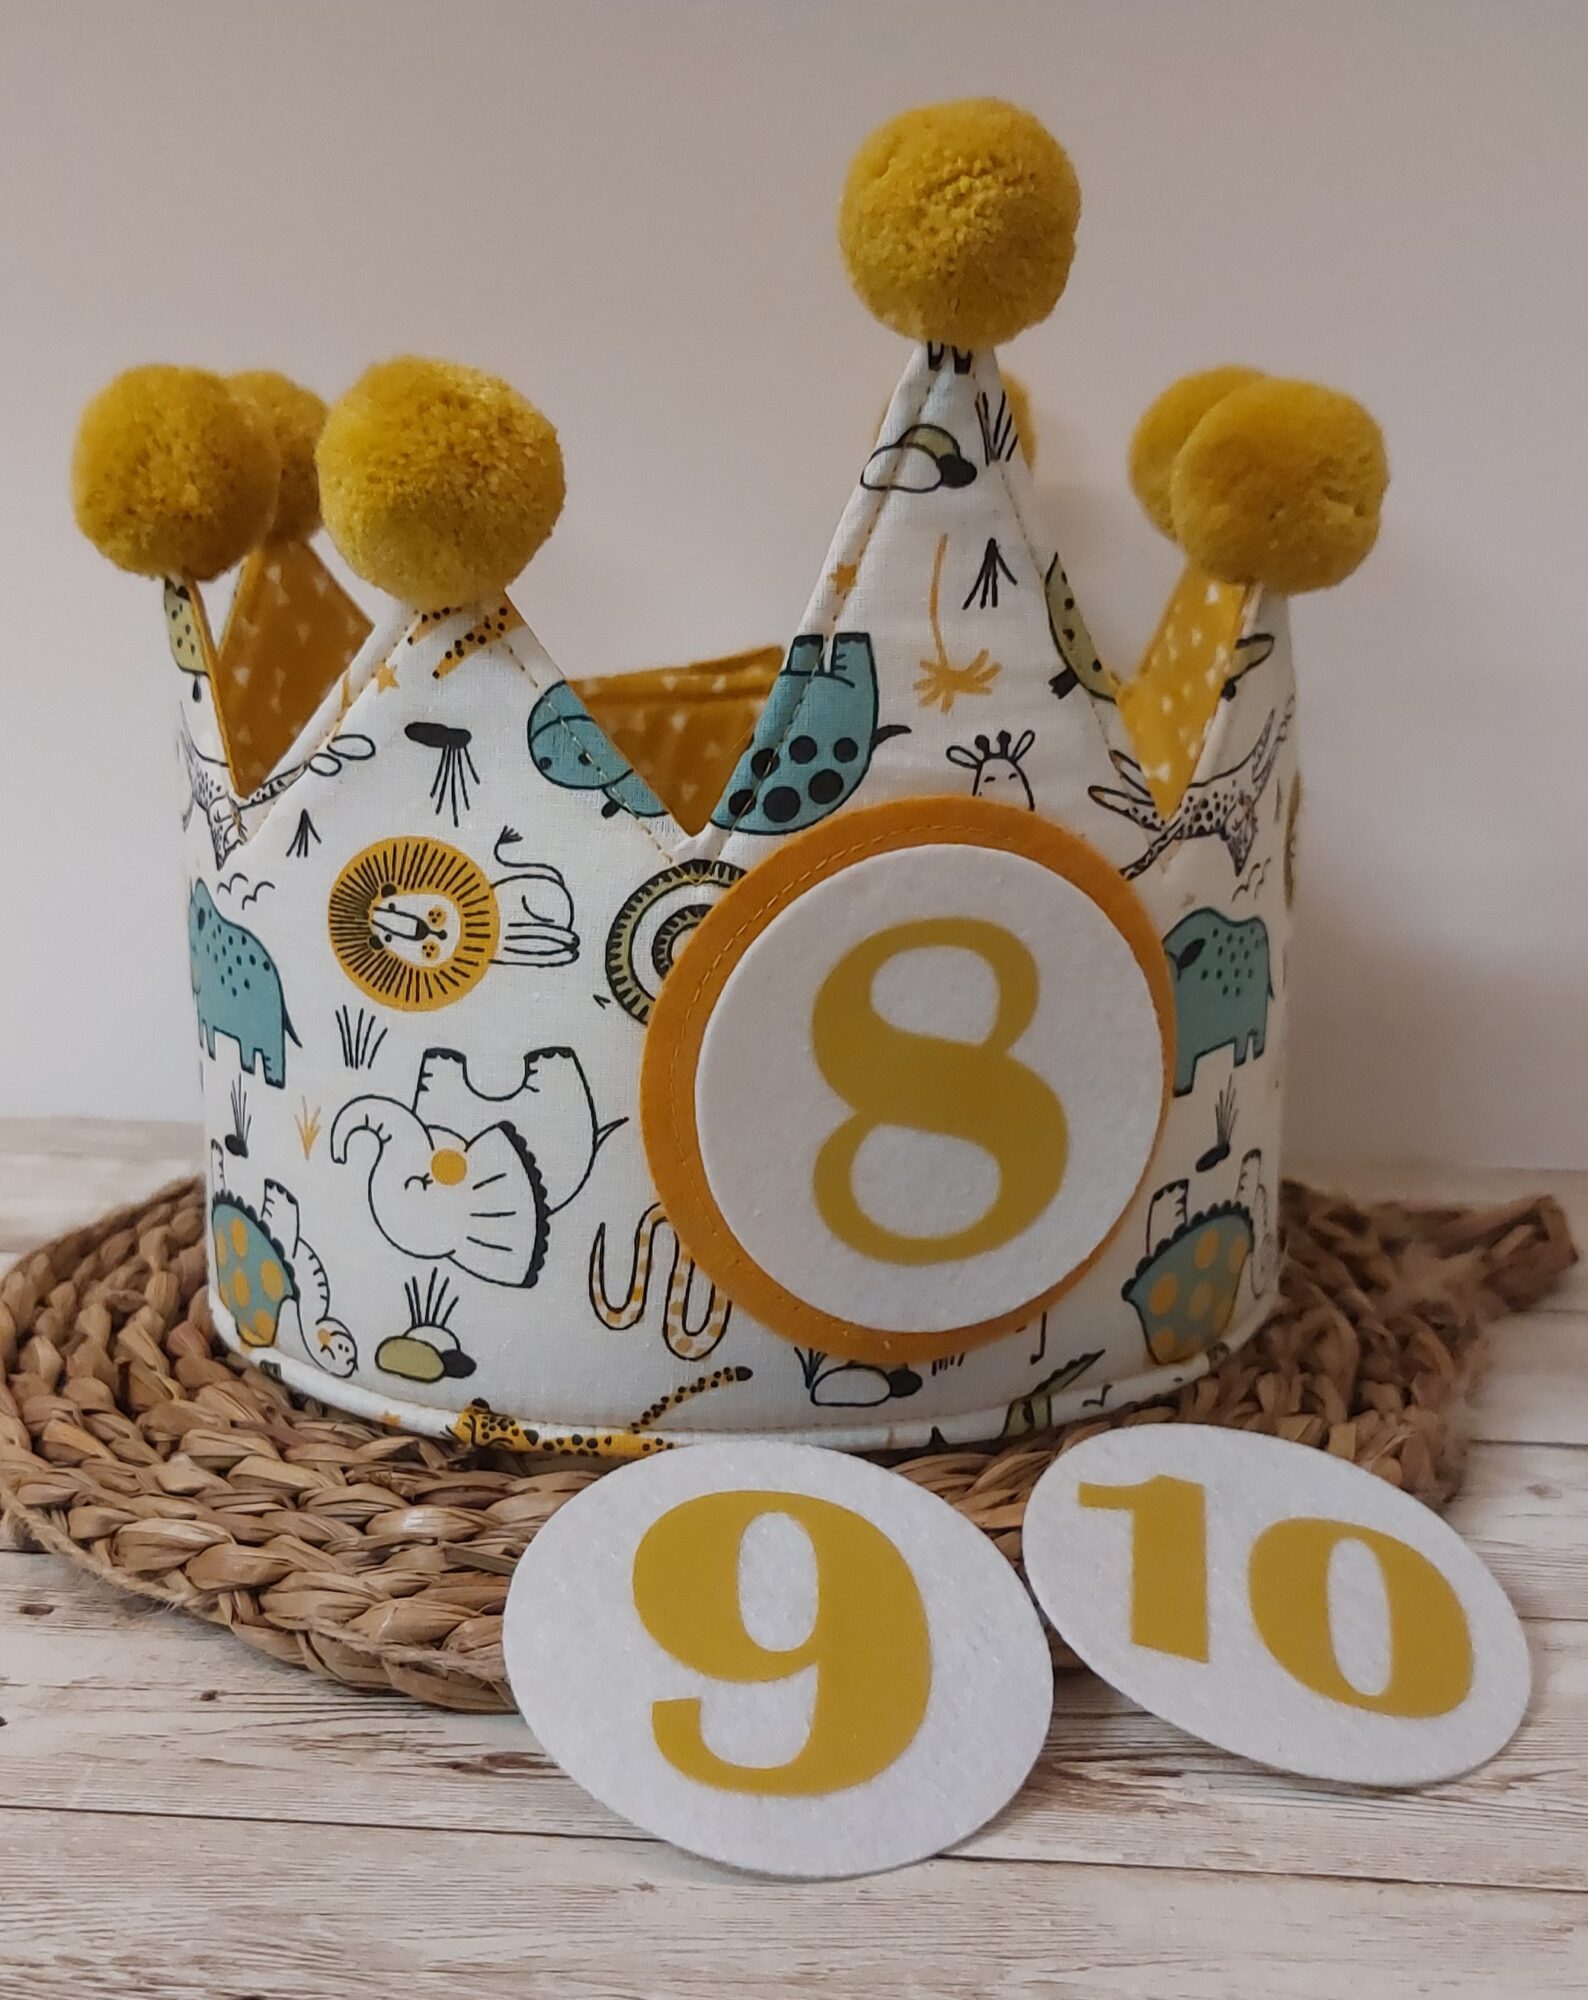 Coronas y conjuntos de cumpleaños y canastillas para bebés hechos a mano.